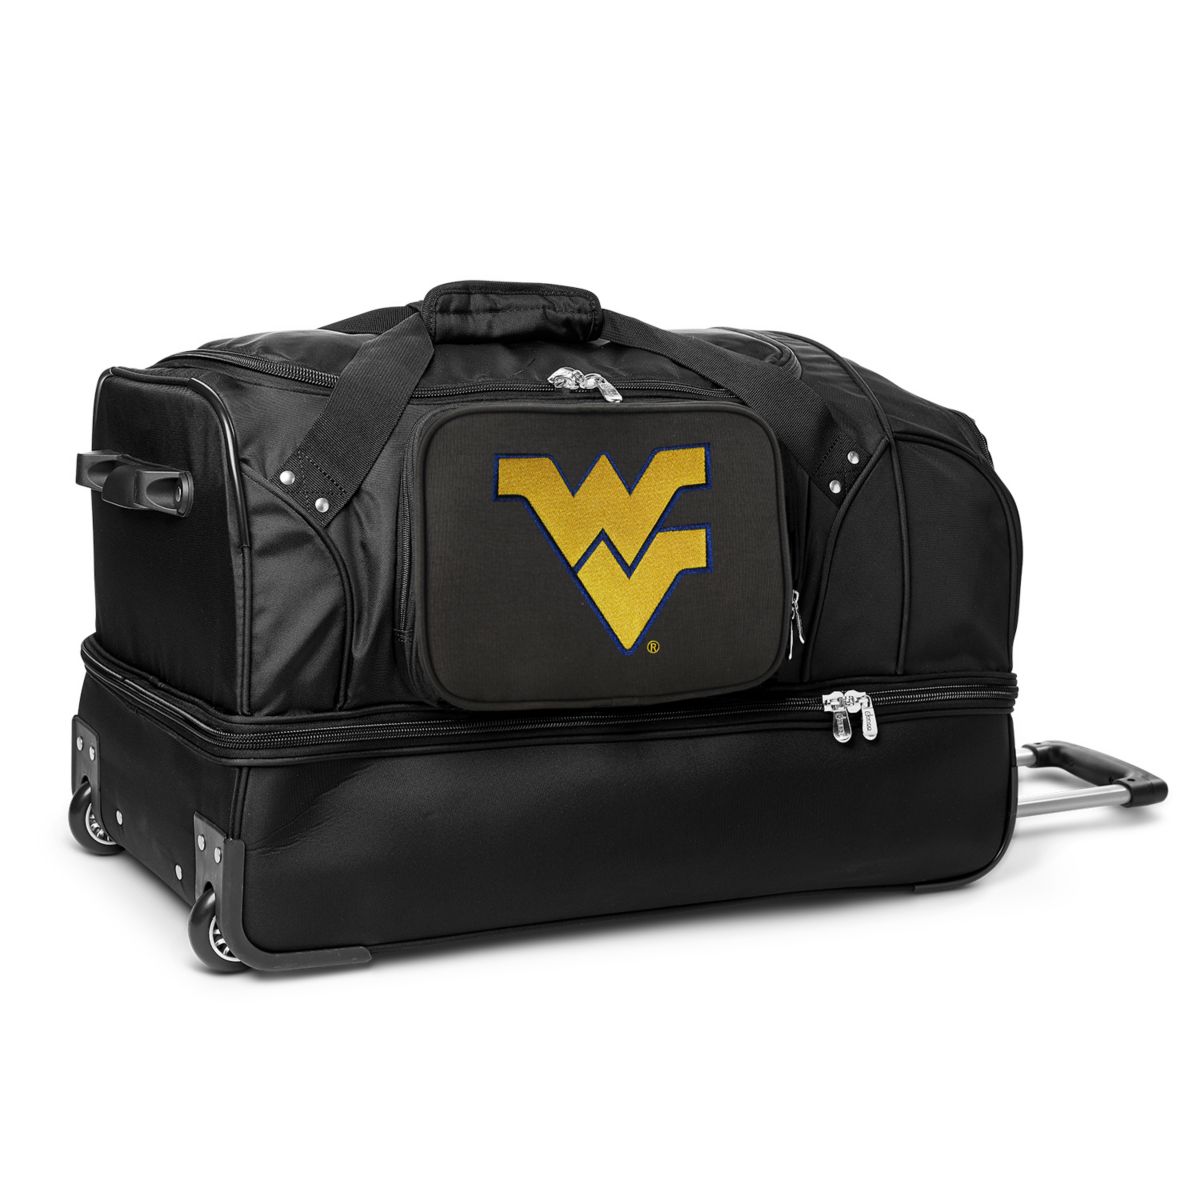 27-дюймовая дорожная сумка на колесиках West Virginia Mountaineers Denco